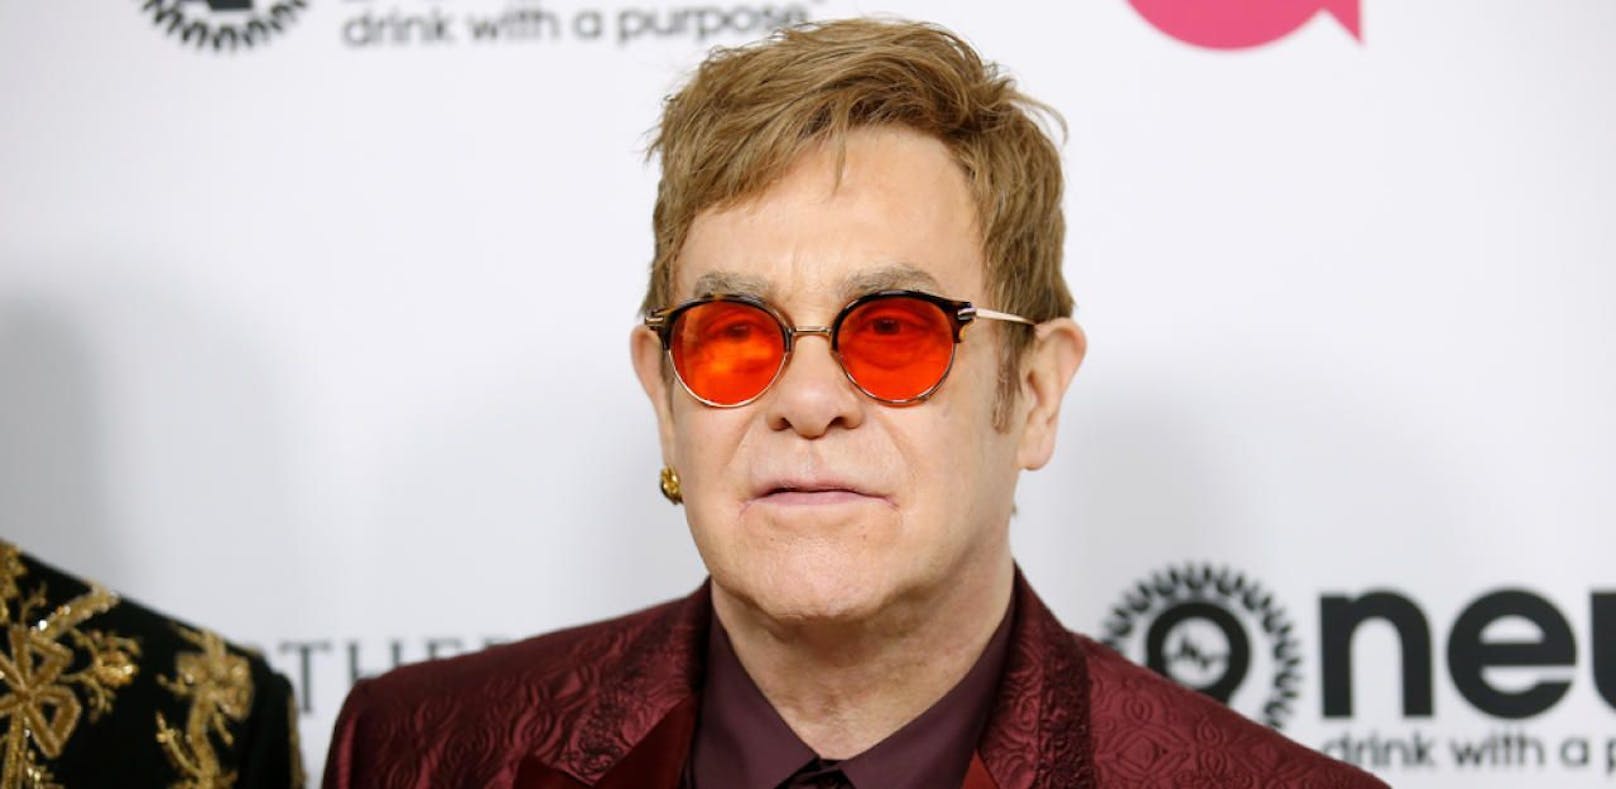 Ein Auftragskiller wollte Popstar Elton John töten!